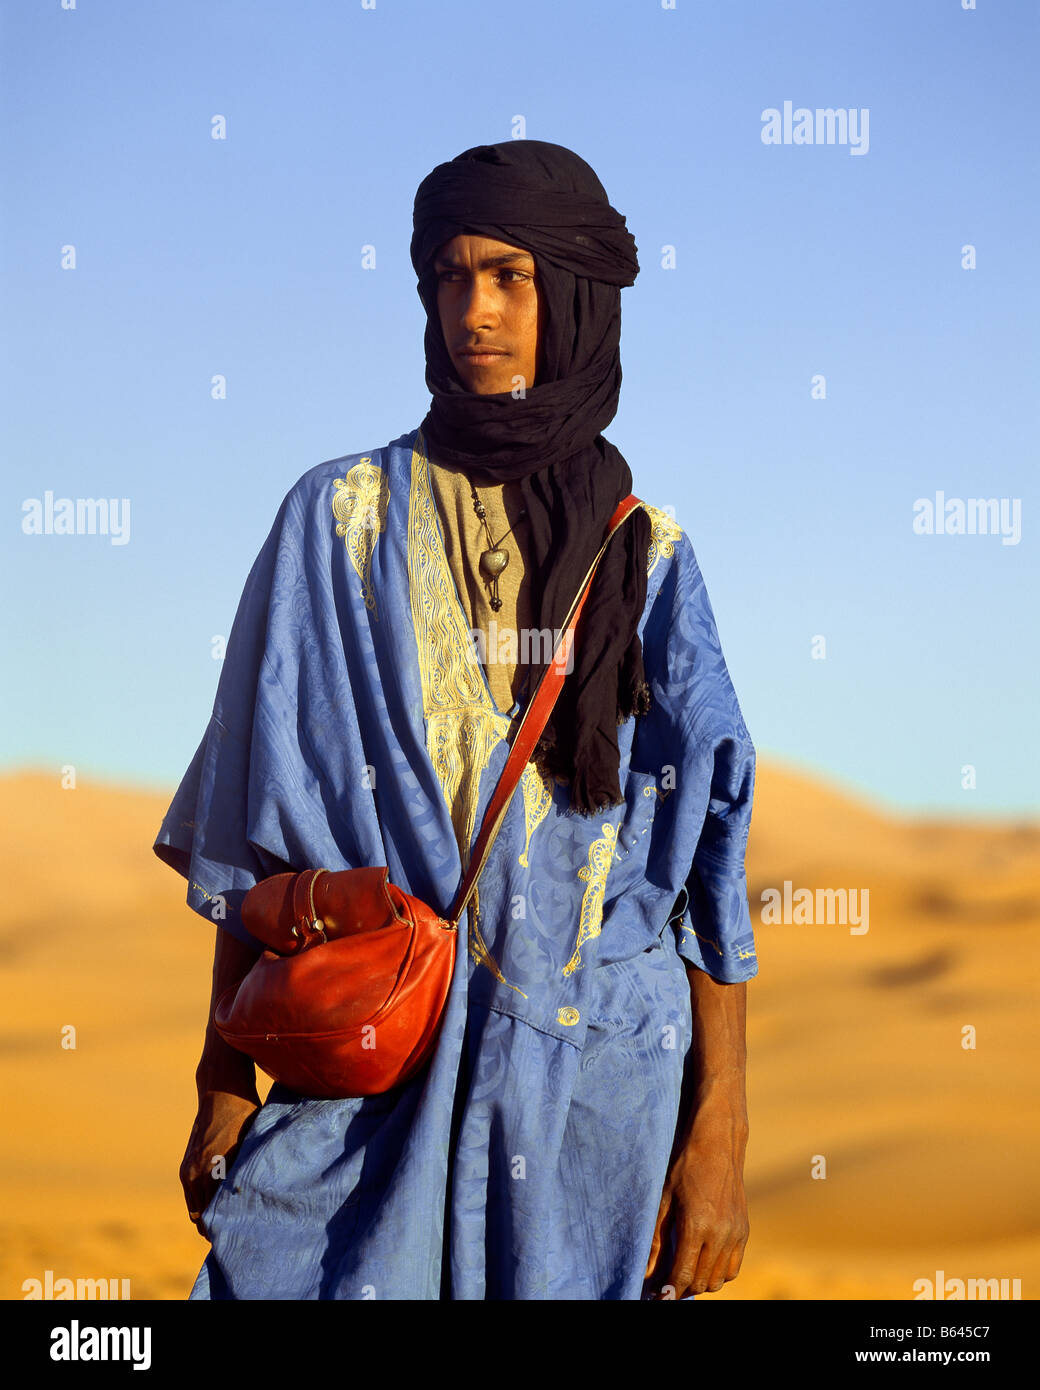 Blue man of the desert, Berber tribe, Morocco Stock Photo